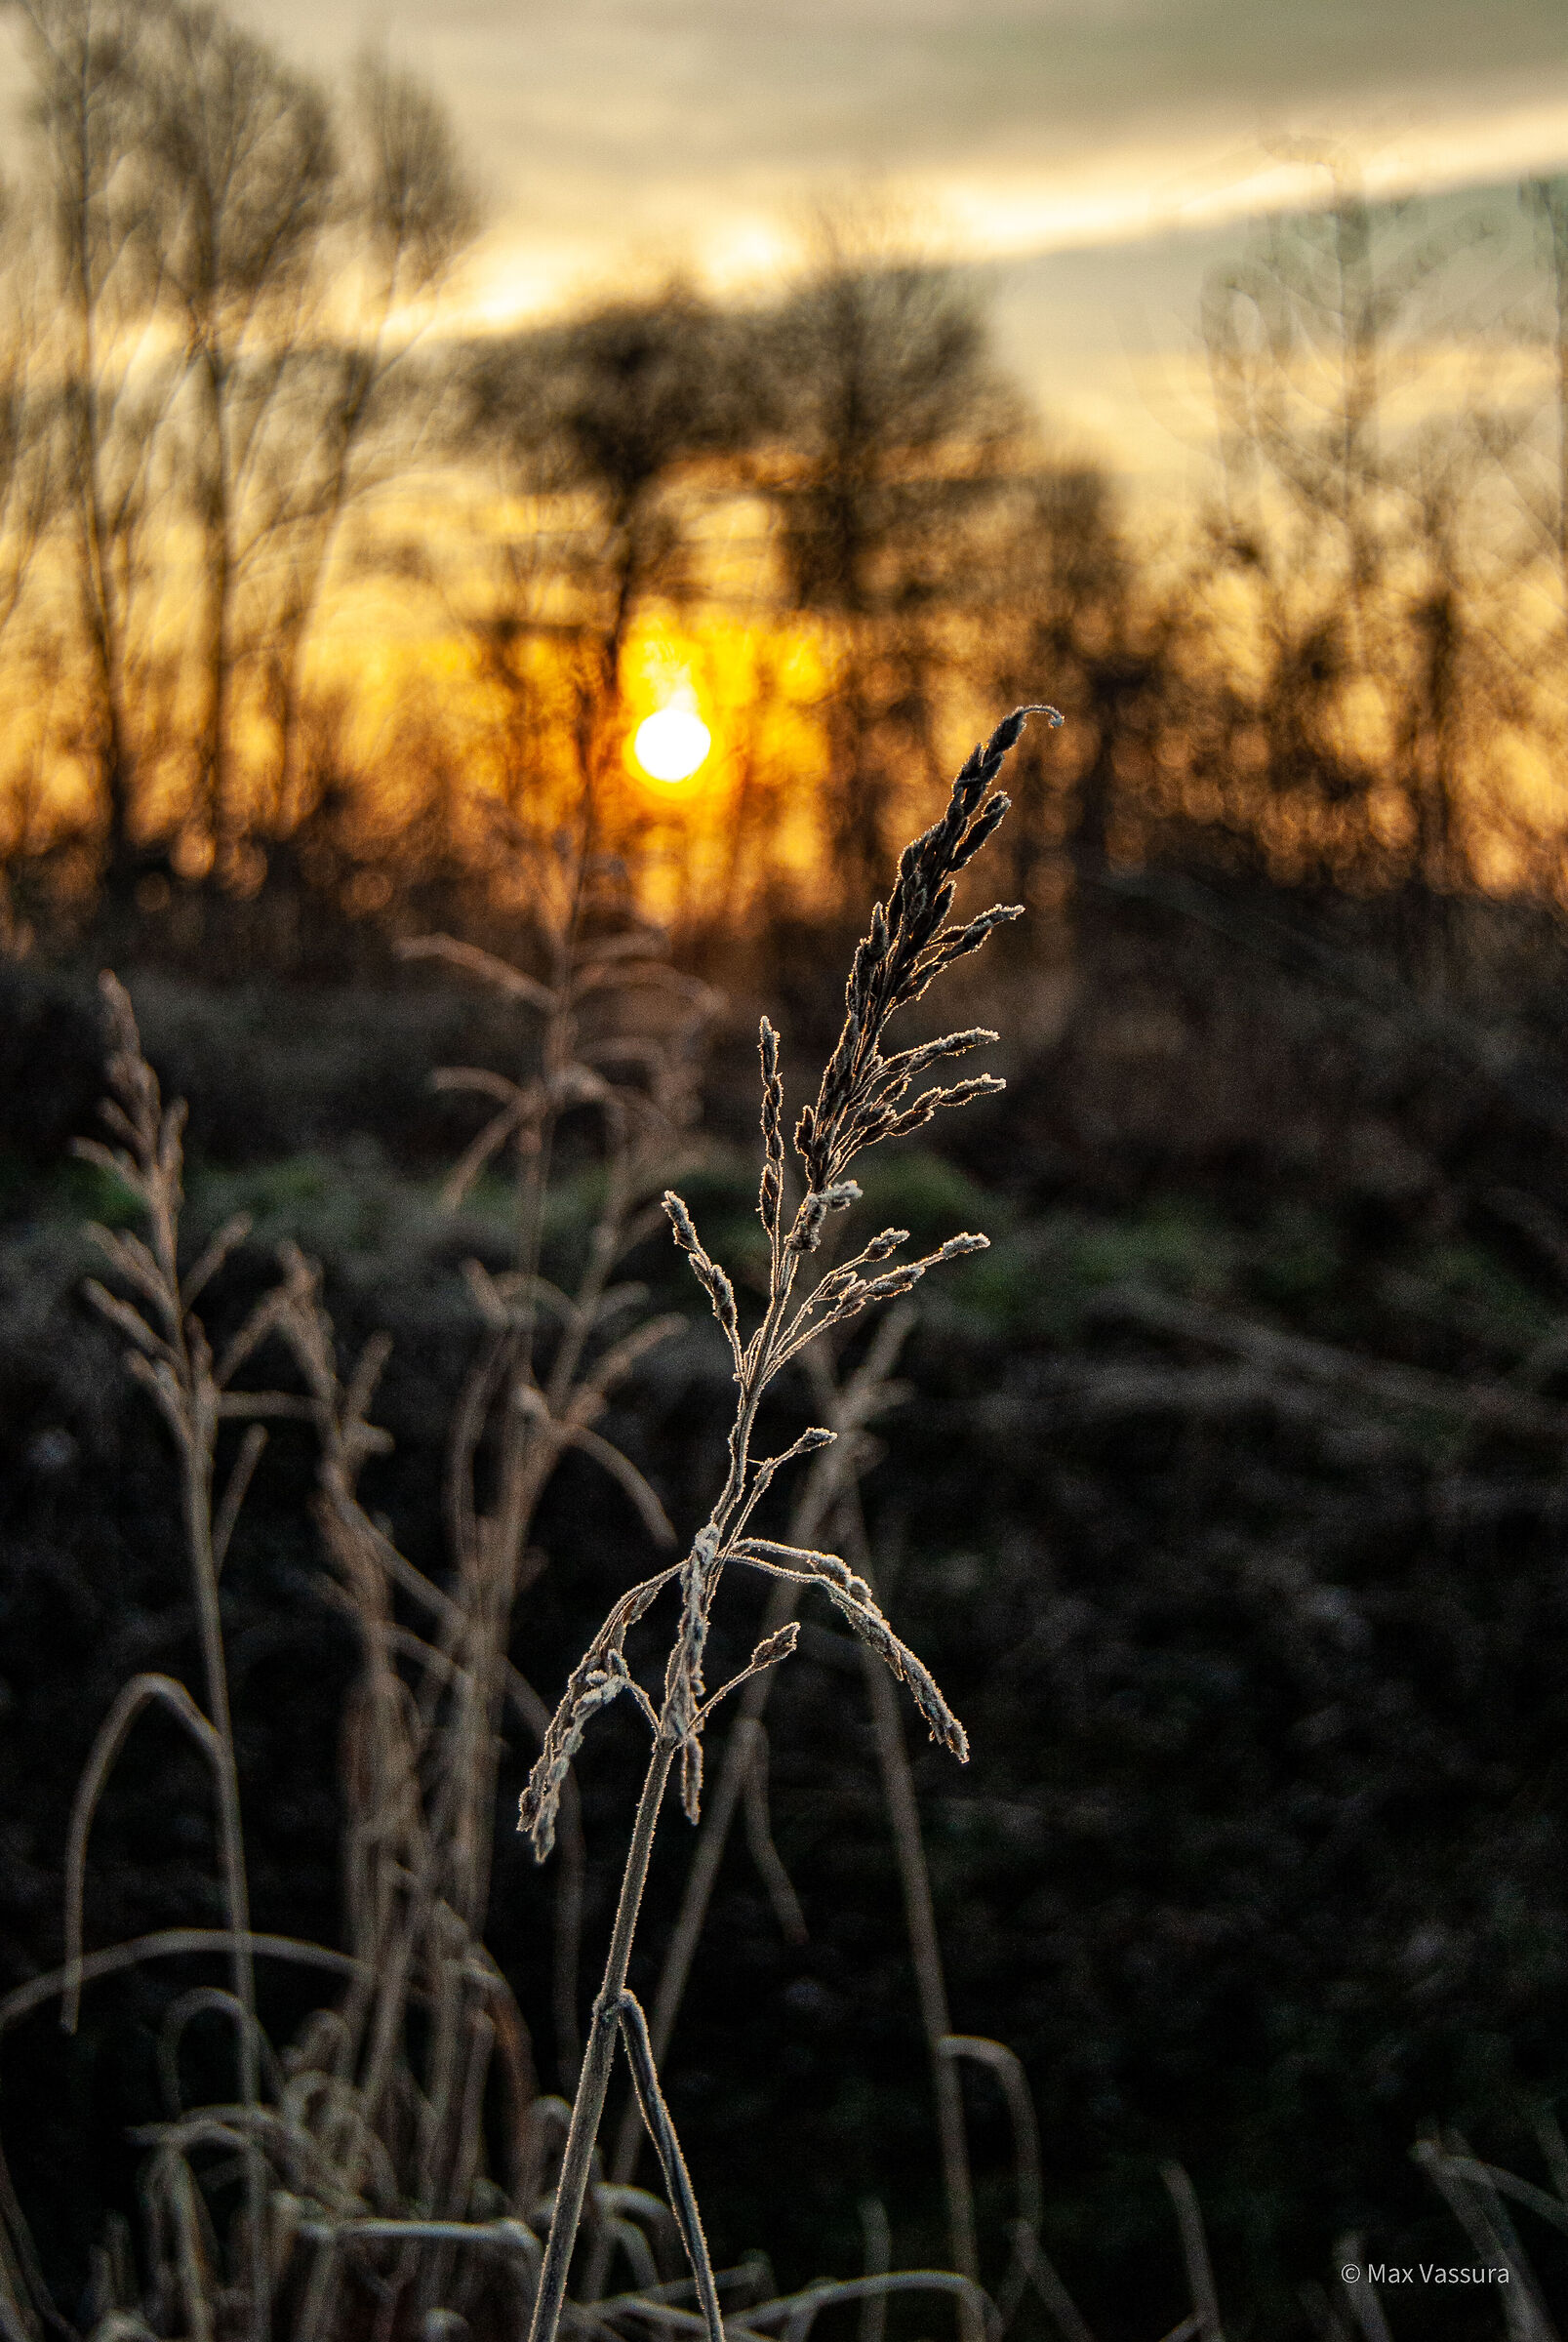 Sunrise with the Nikon D200...